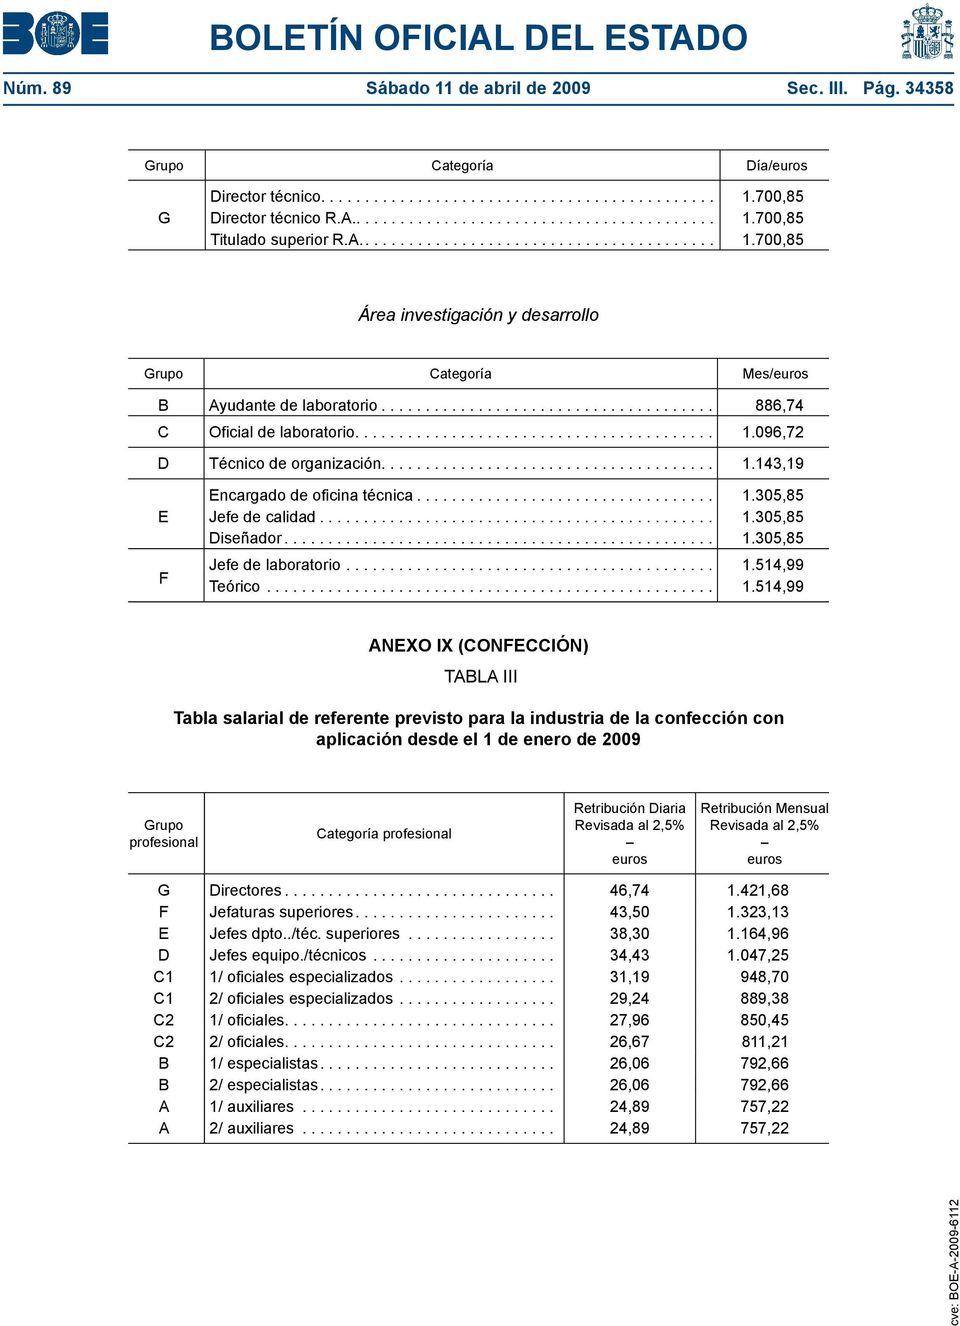 .. 1.514,99 ANXO IX (CONCCIÓN) TABLA III Tabla salarial de referente previsto para la industria de la confección con aplicación desde el 1 de enero de 2009 Categoría Retribución iaria Revisada al